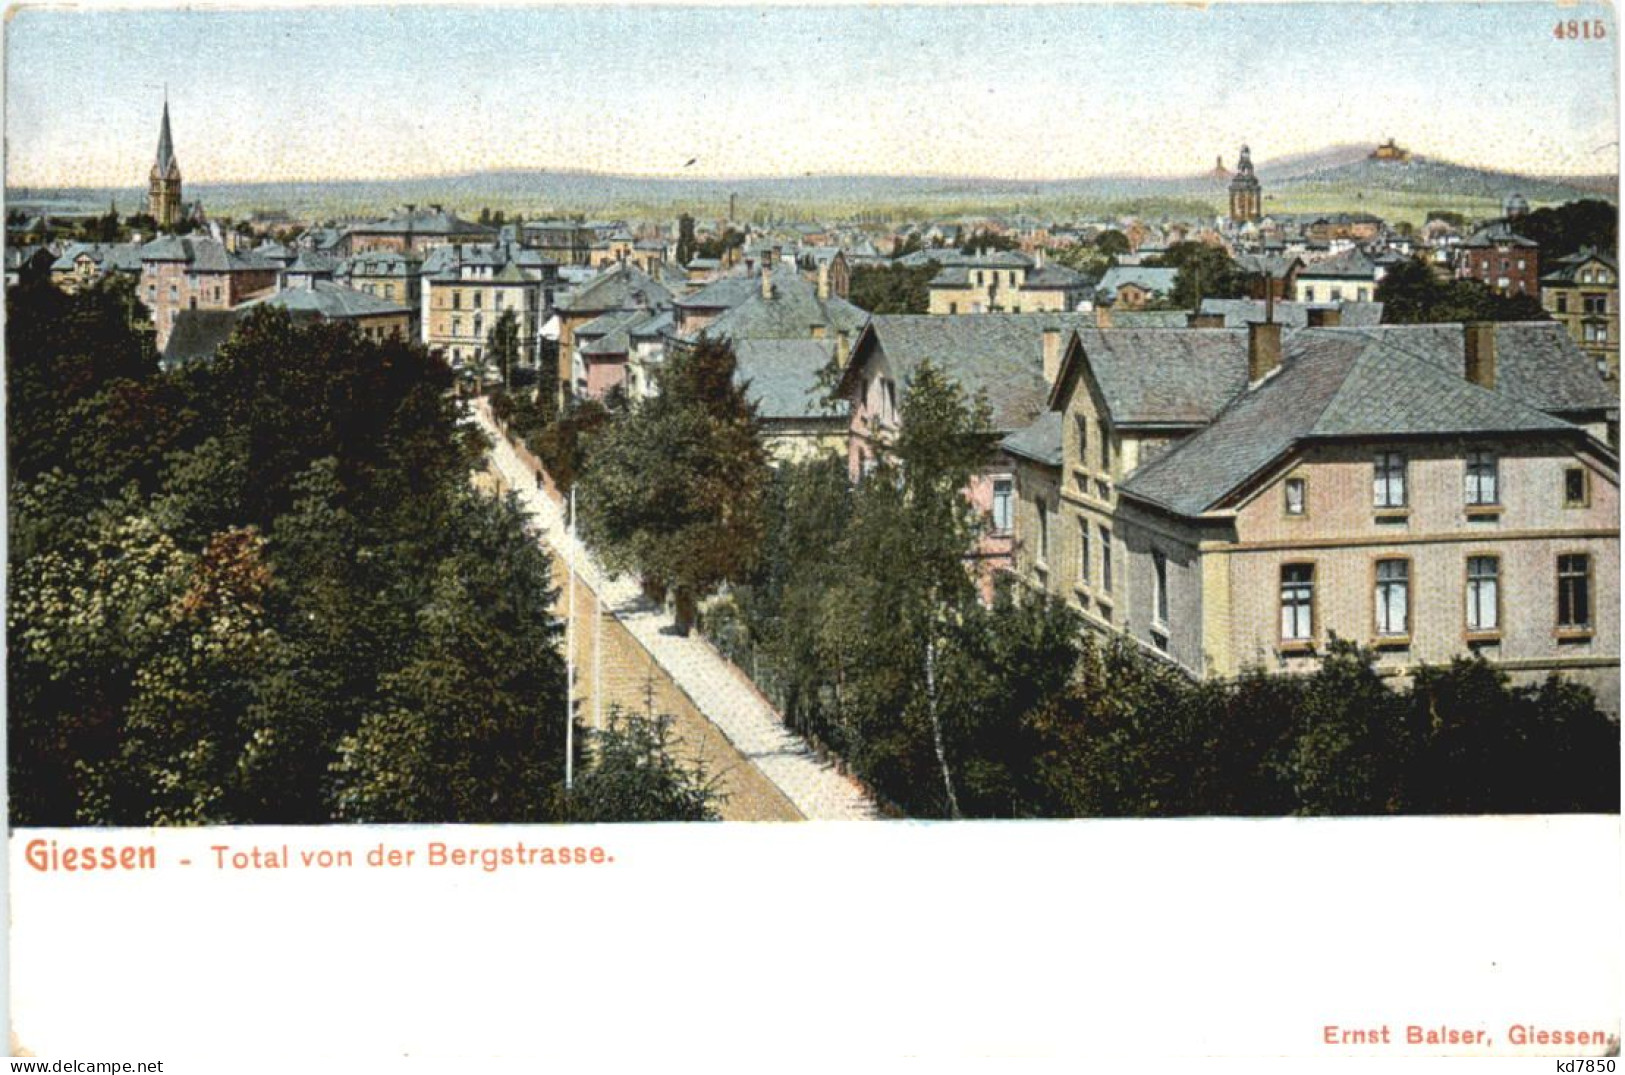 Giessen - Giessen